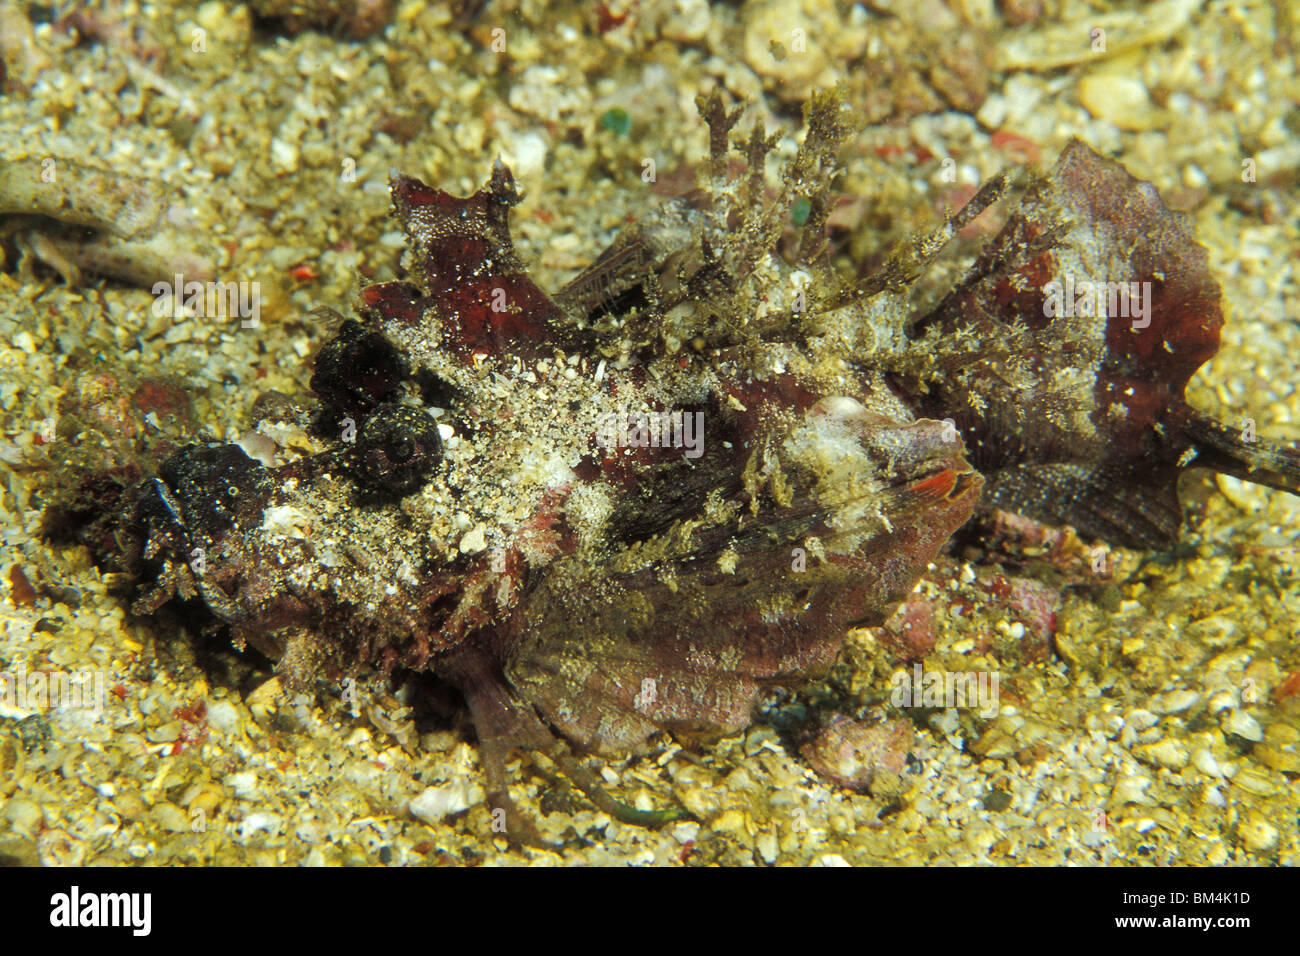 Stachelige Devilfish Inimicus Didactylus, Lembeh Strait, Sulawesi, Indonesien Stockfoto